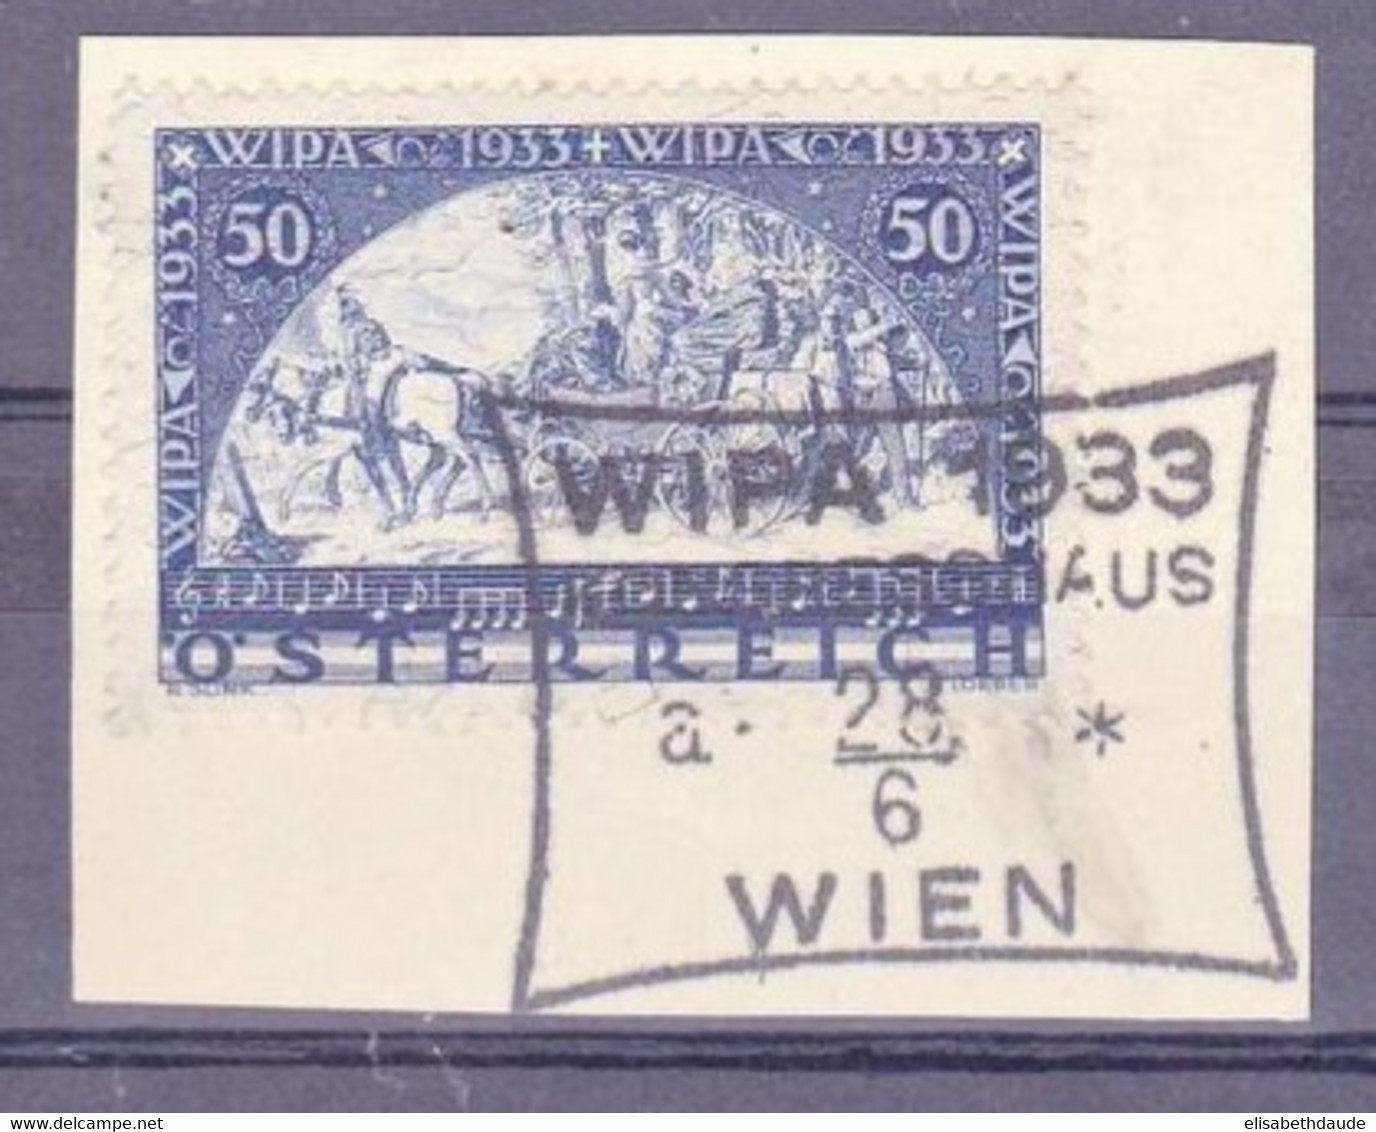 AUTRICHE - 1933 - YVERT N° 430a Avec FILS DE SOIE Sur FRAGMENT Avec OBLITERATION WIPA 1933 - COTE : 725 EUROS+++ - Gebraucht